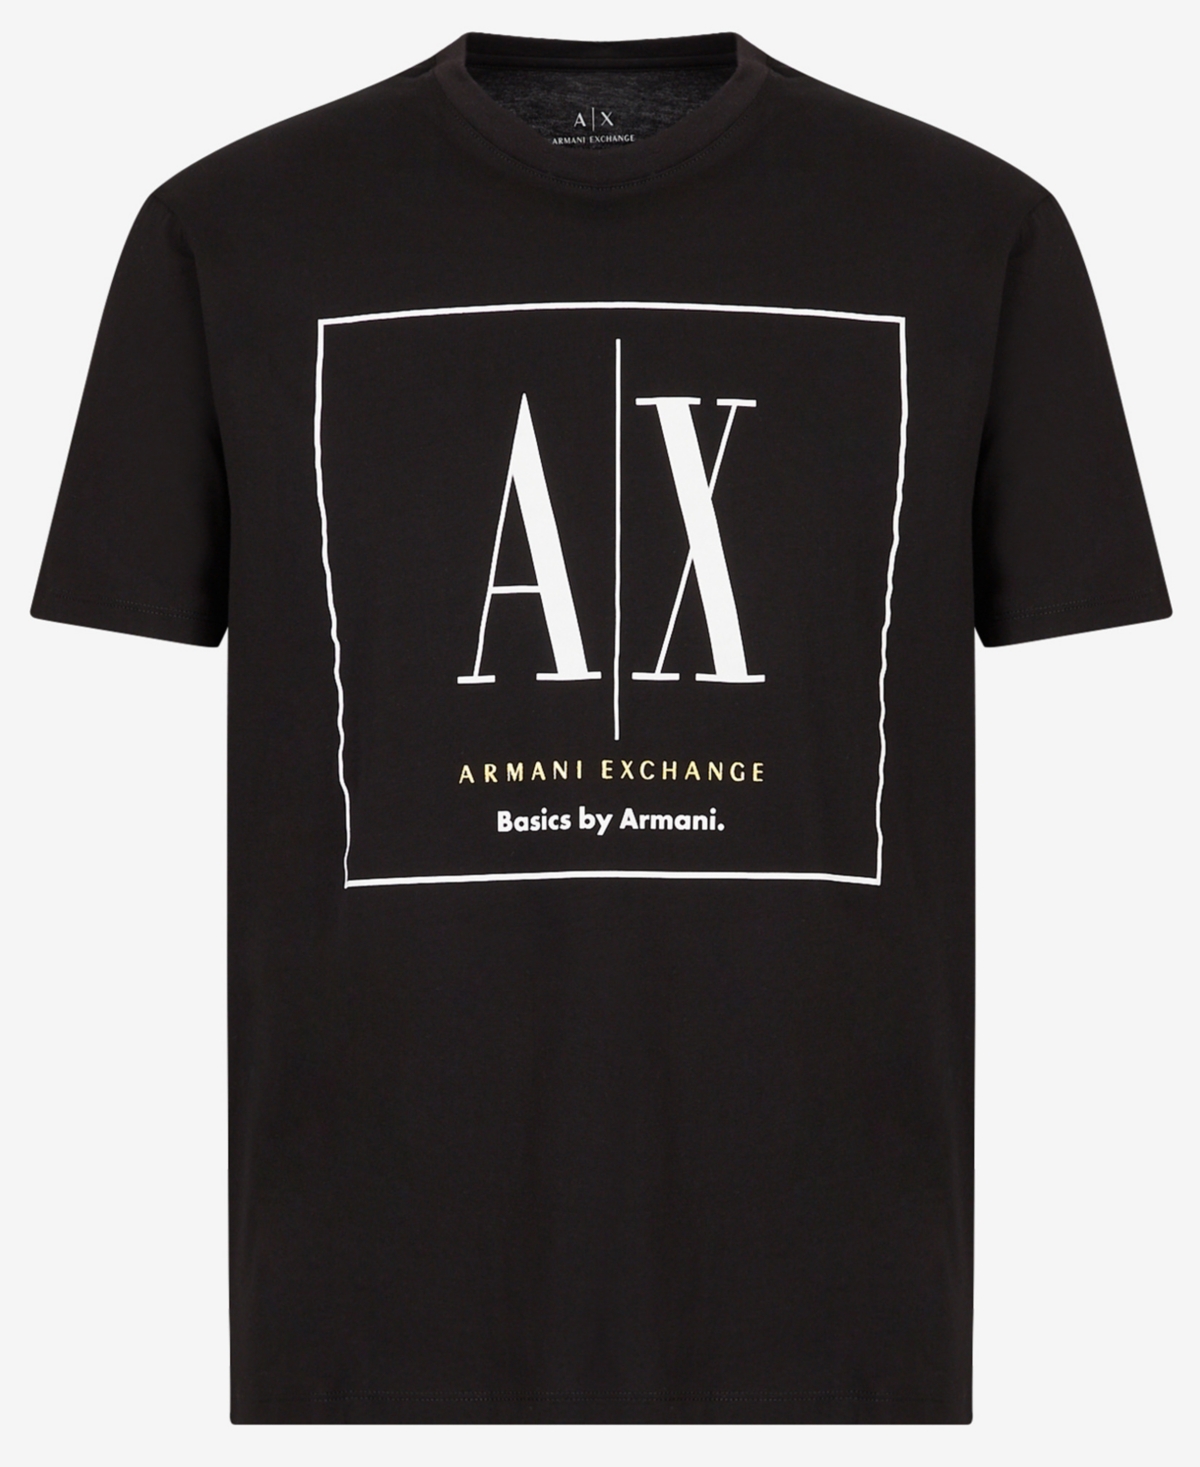 A X Armani Exchange Men's Basics By Armani Box Logo Graphic T-shirt In Black